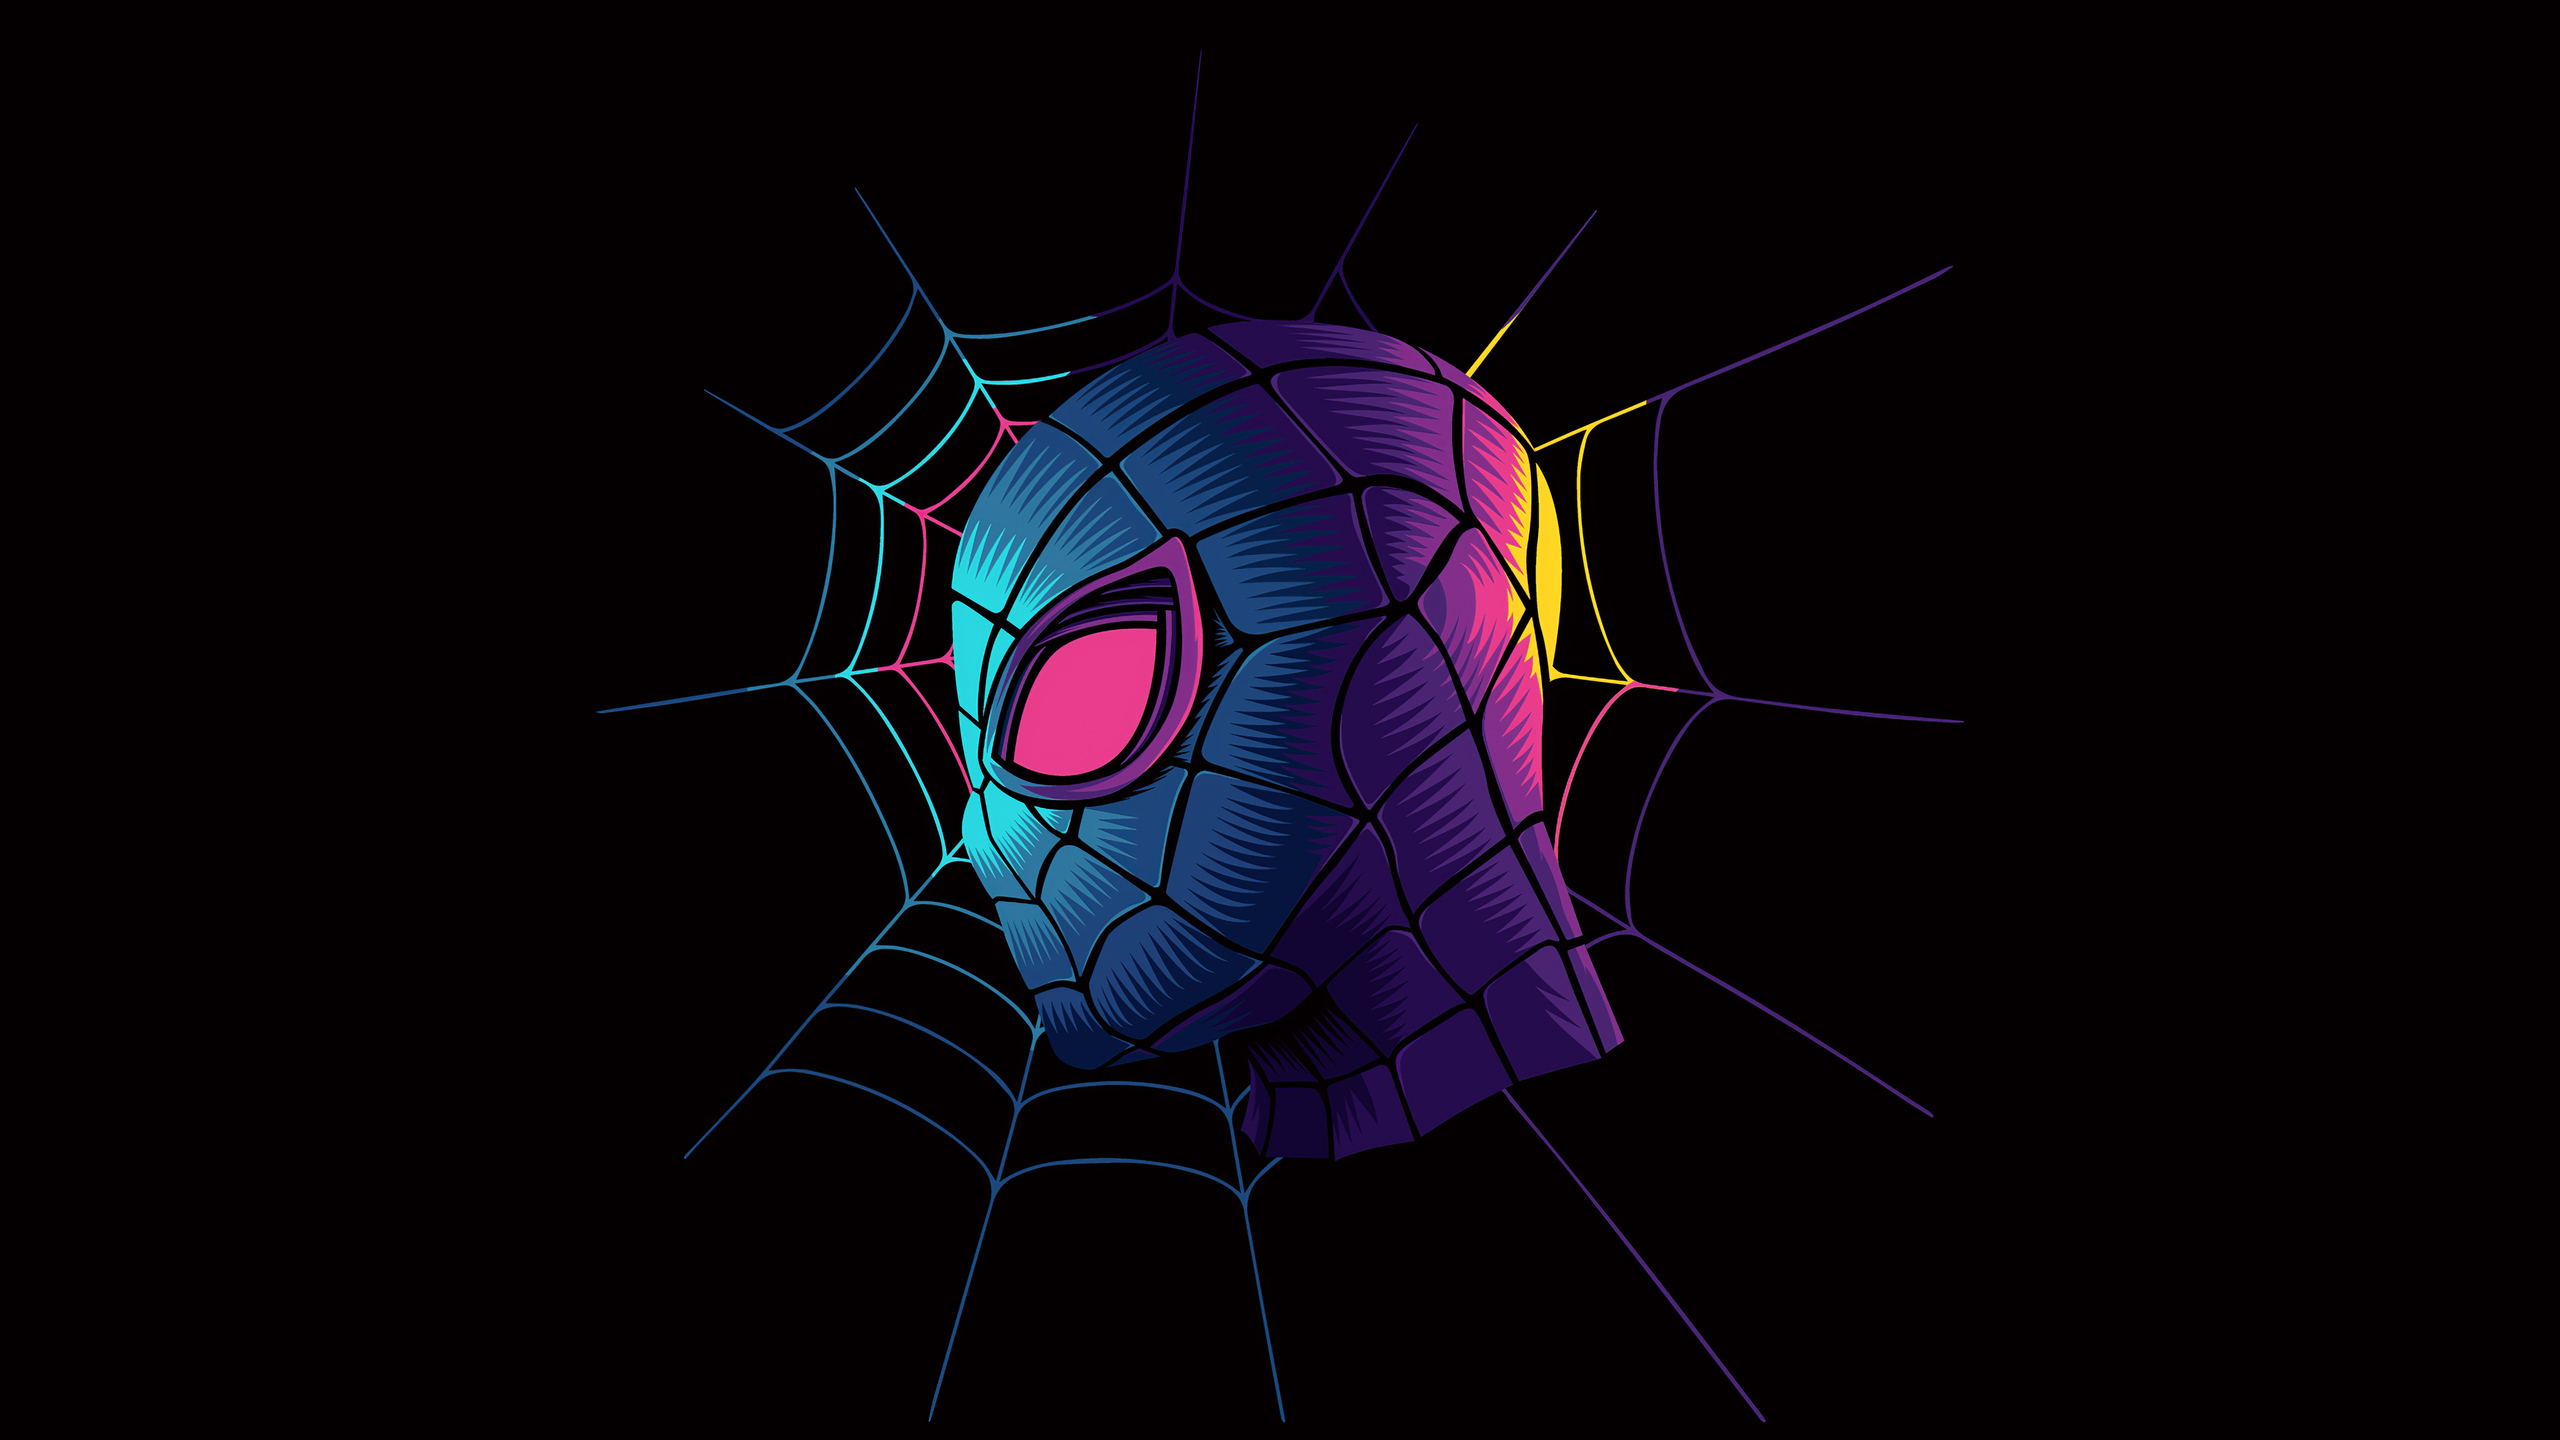 2560x1440 Spiderman Web Minimalist Art 4k 1440P Resolution ...